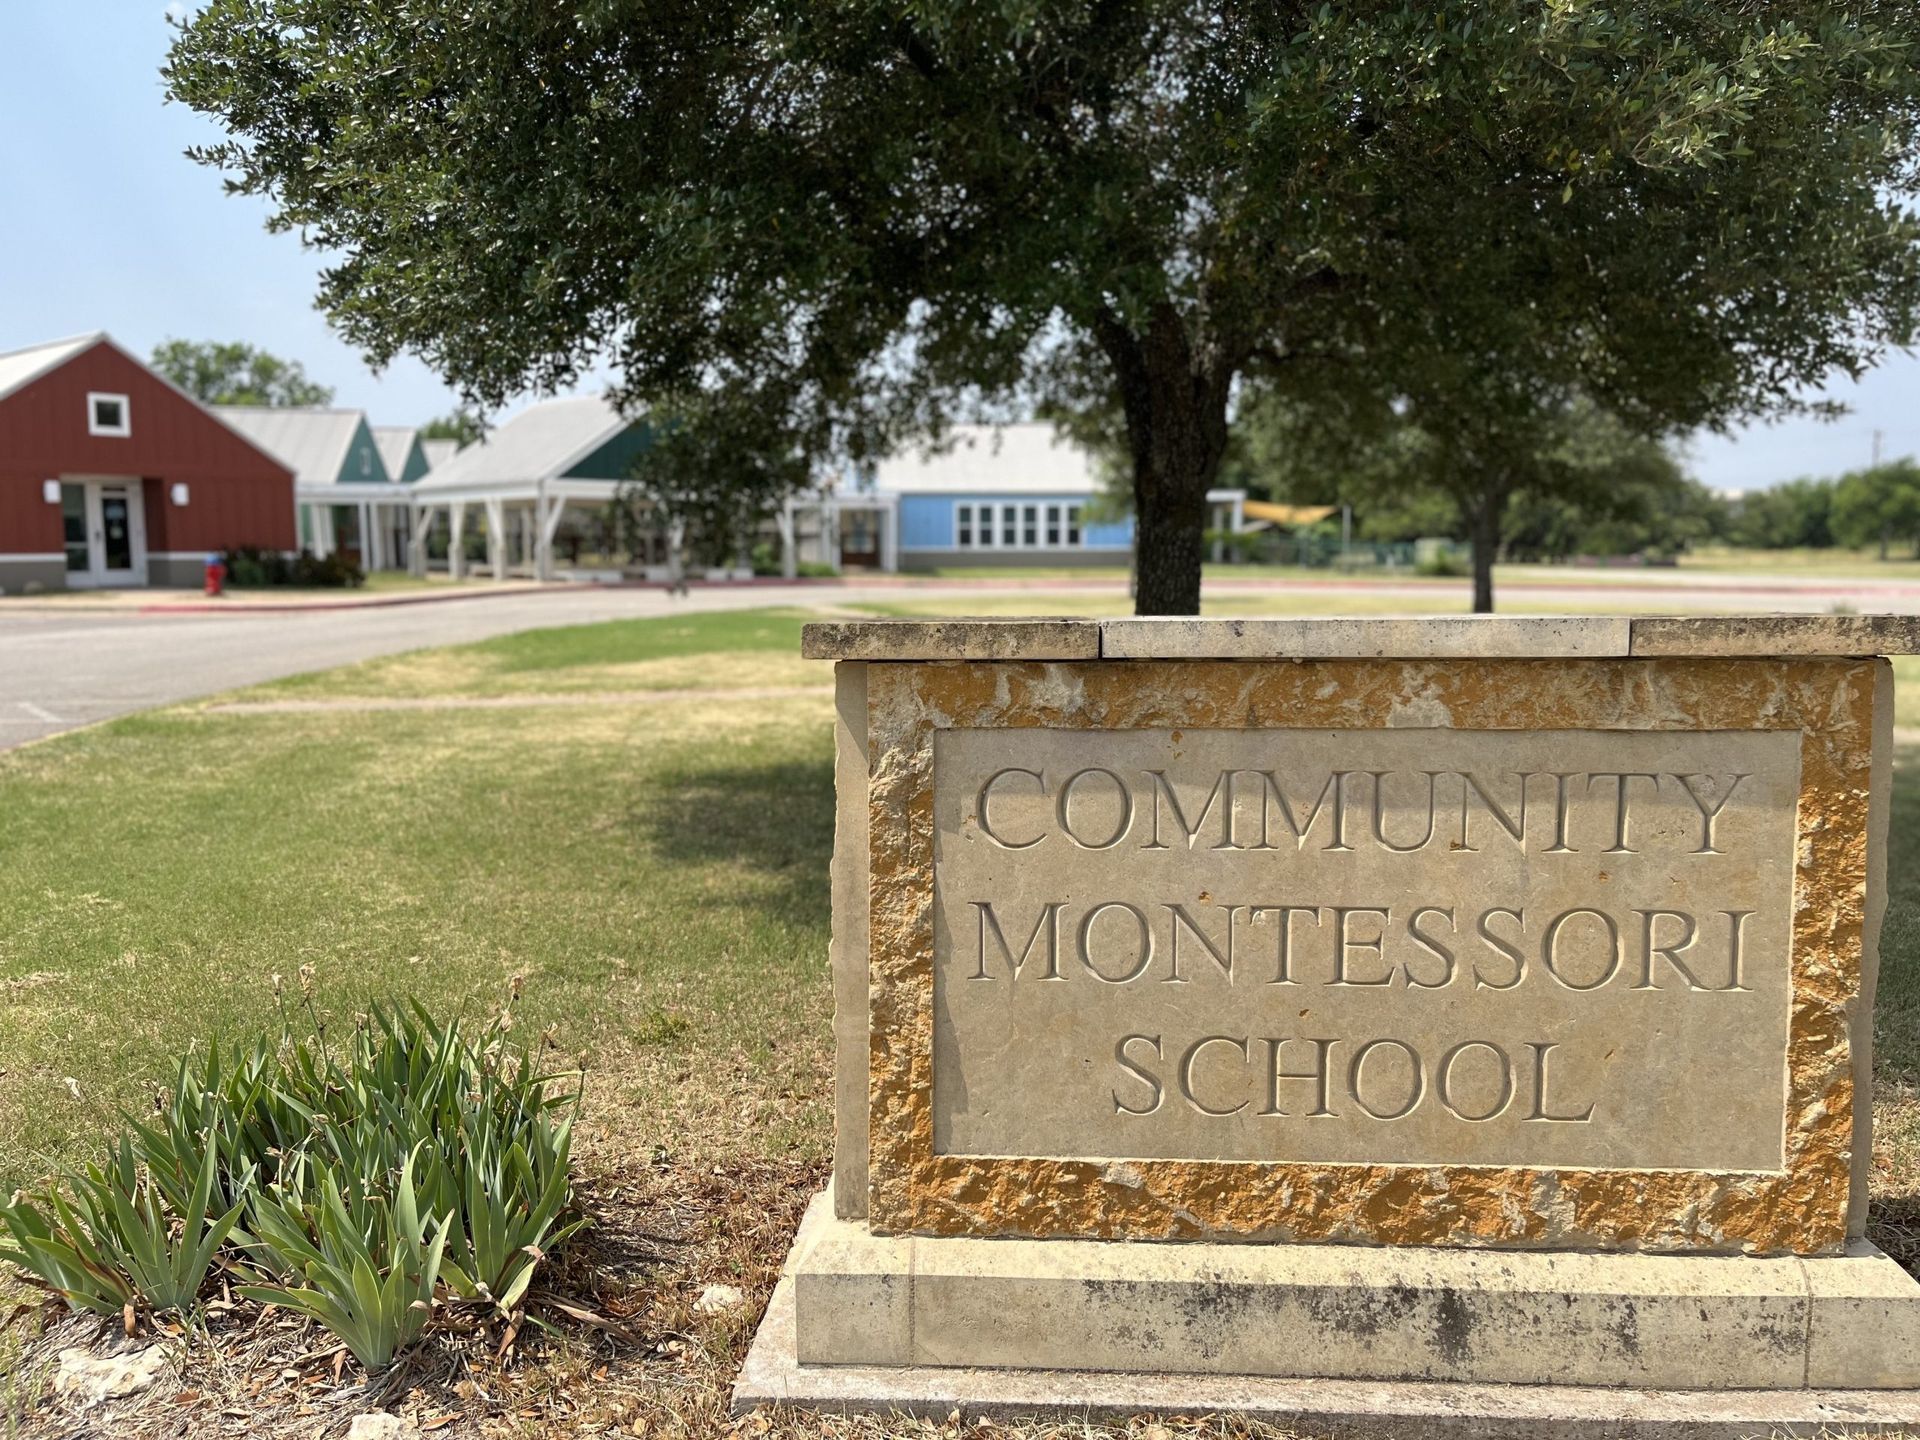 A stone sign for the Community Montessori School